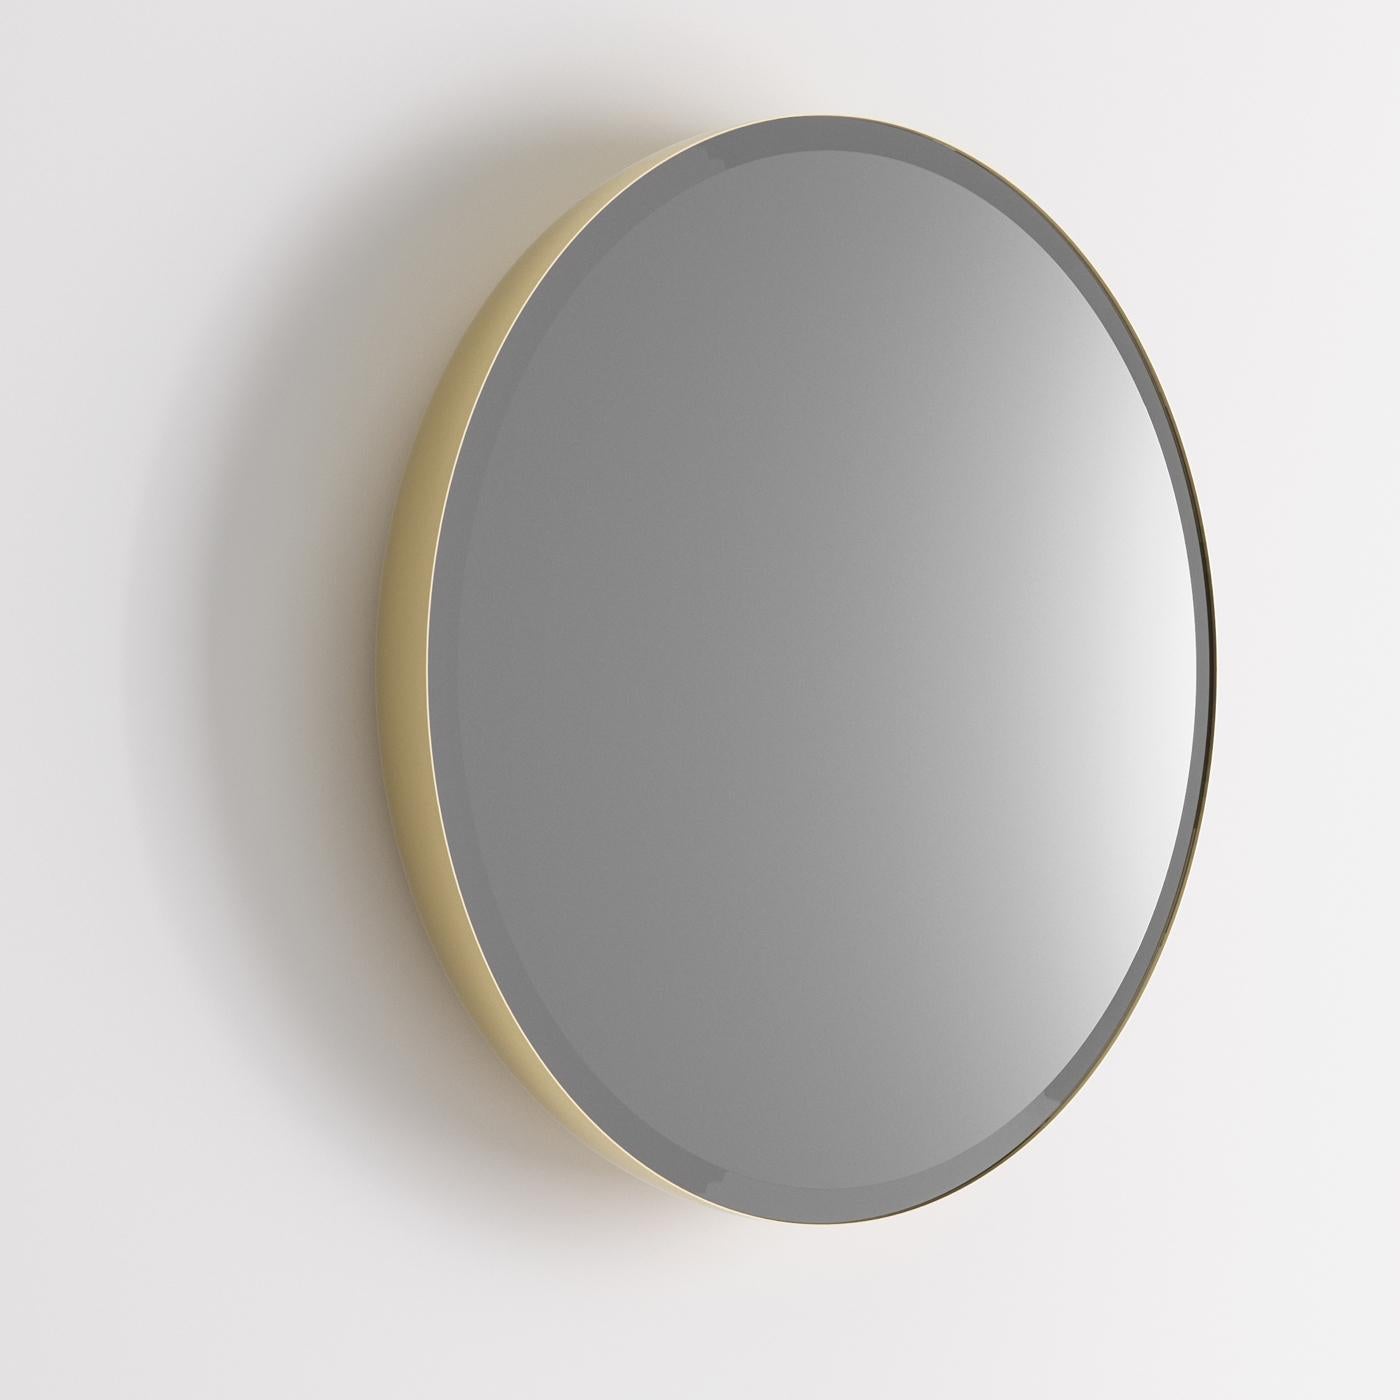 Italian Josephine Oval Mirror